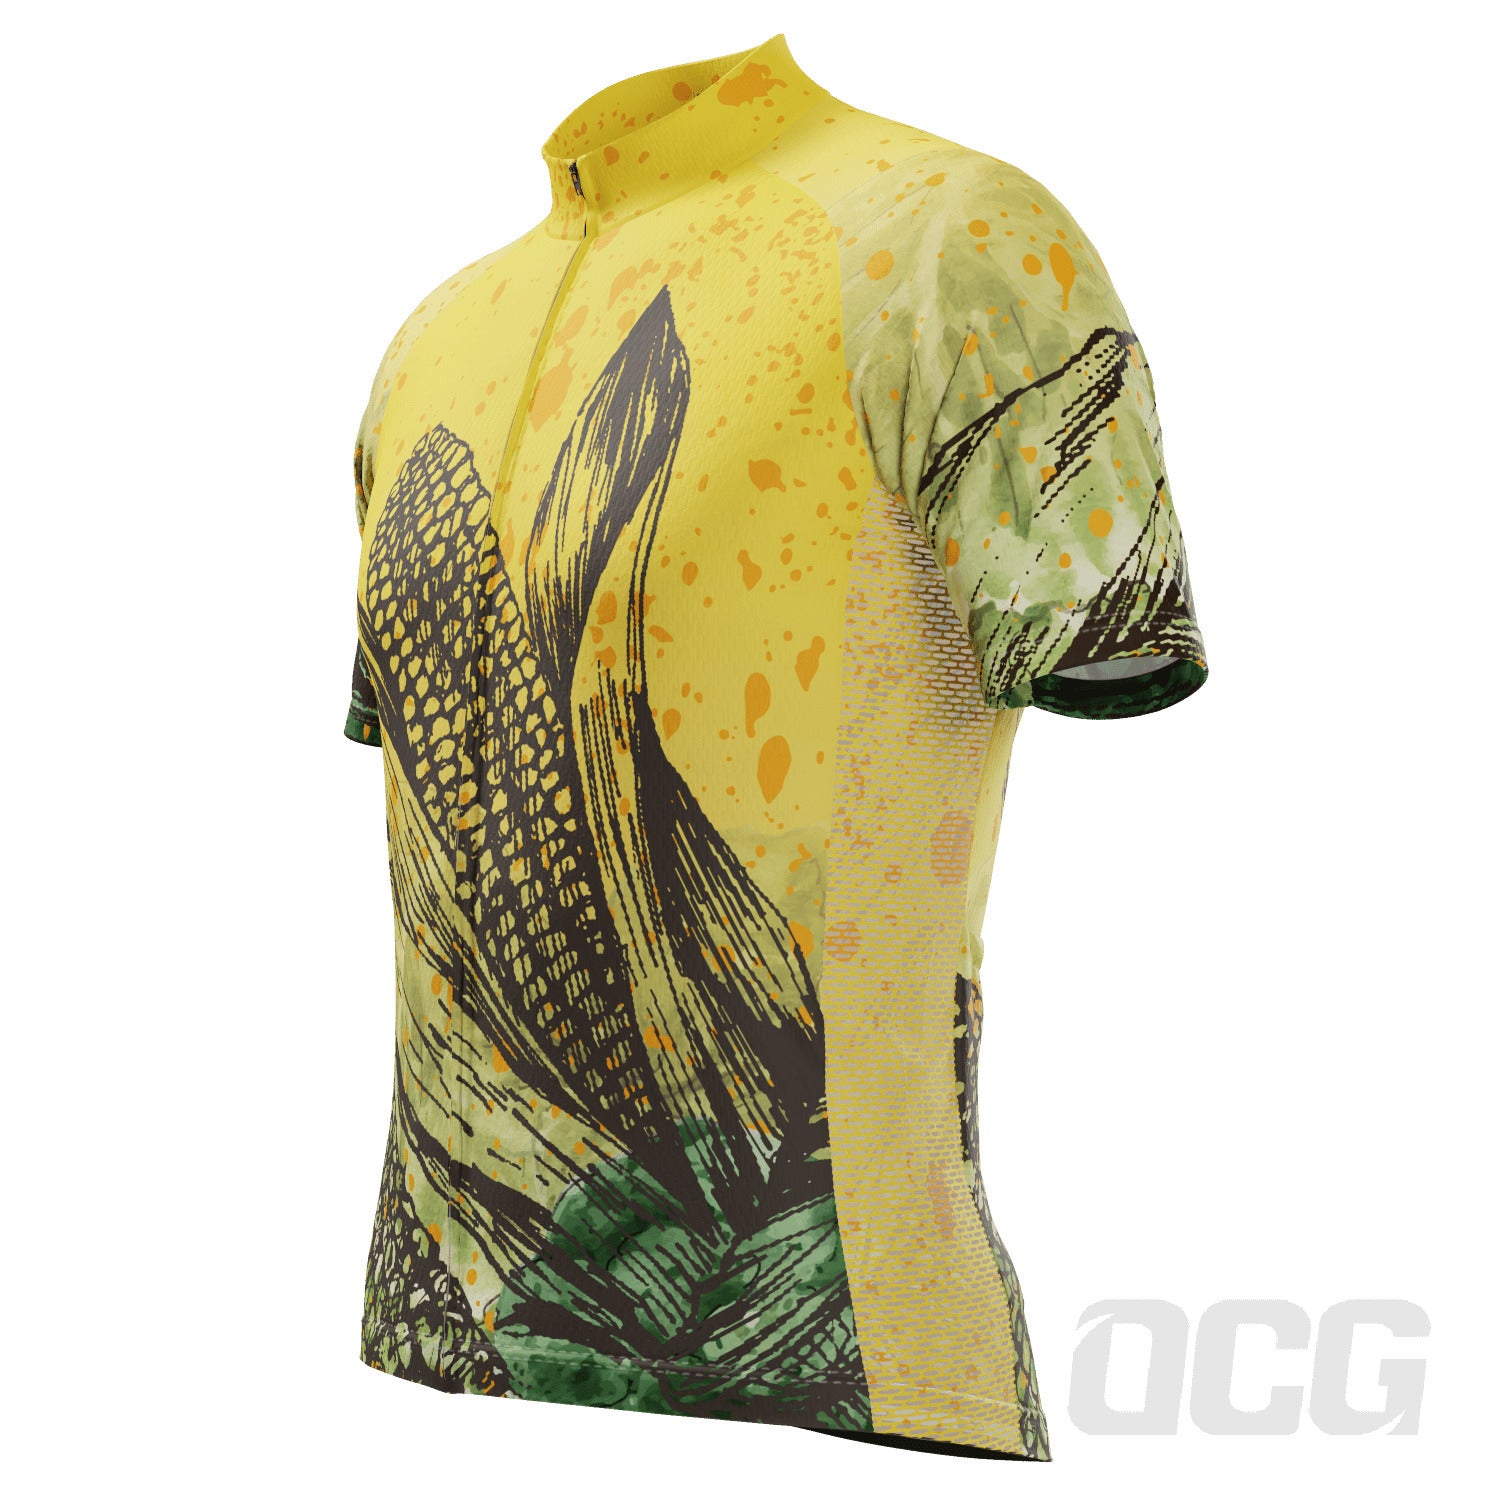 Men's Corny Short Sleeve Cycling Jersey